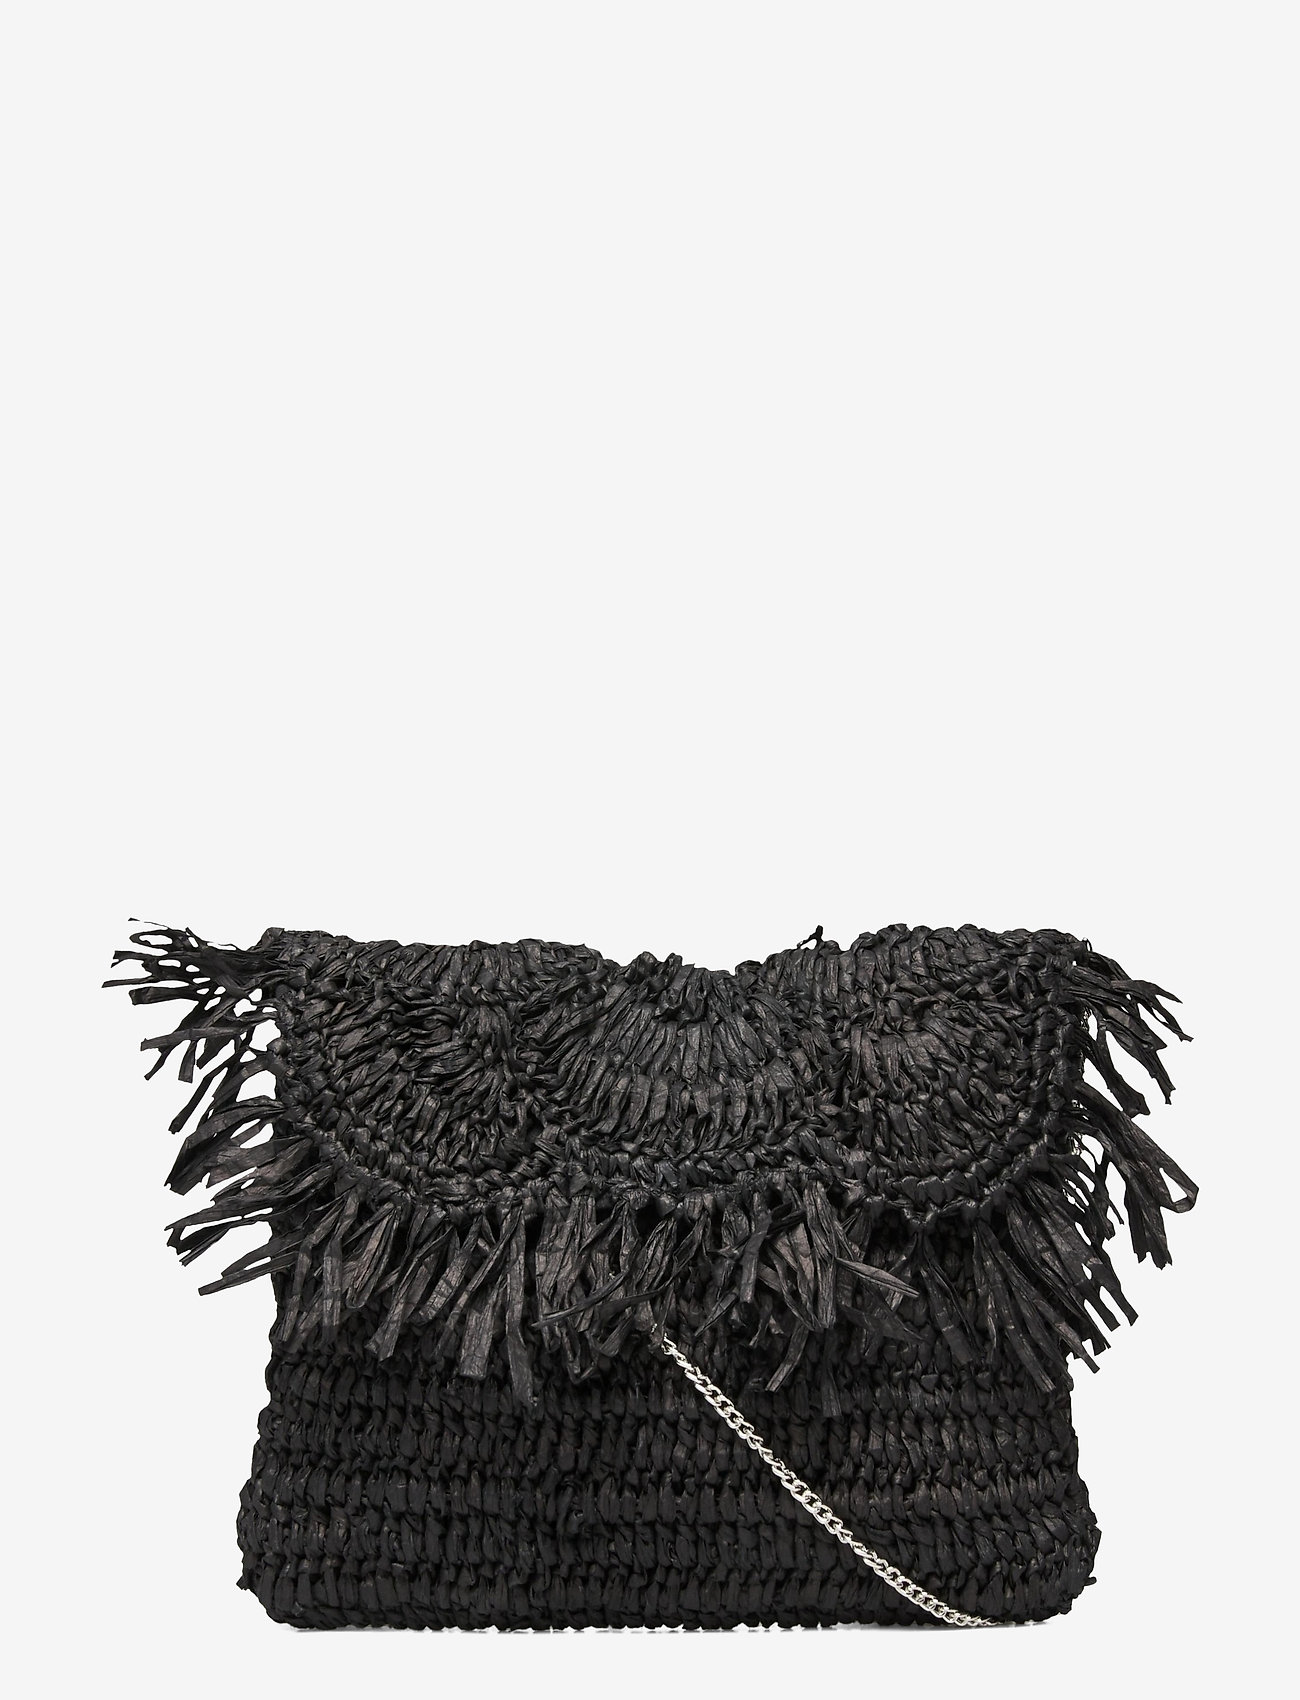 Pipol's Bazaar - Cultura Straw Clutch Black - odzież imprezowa w cenach outletowych - black - 0